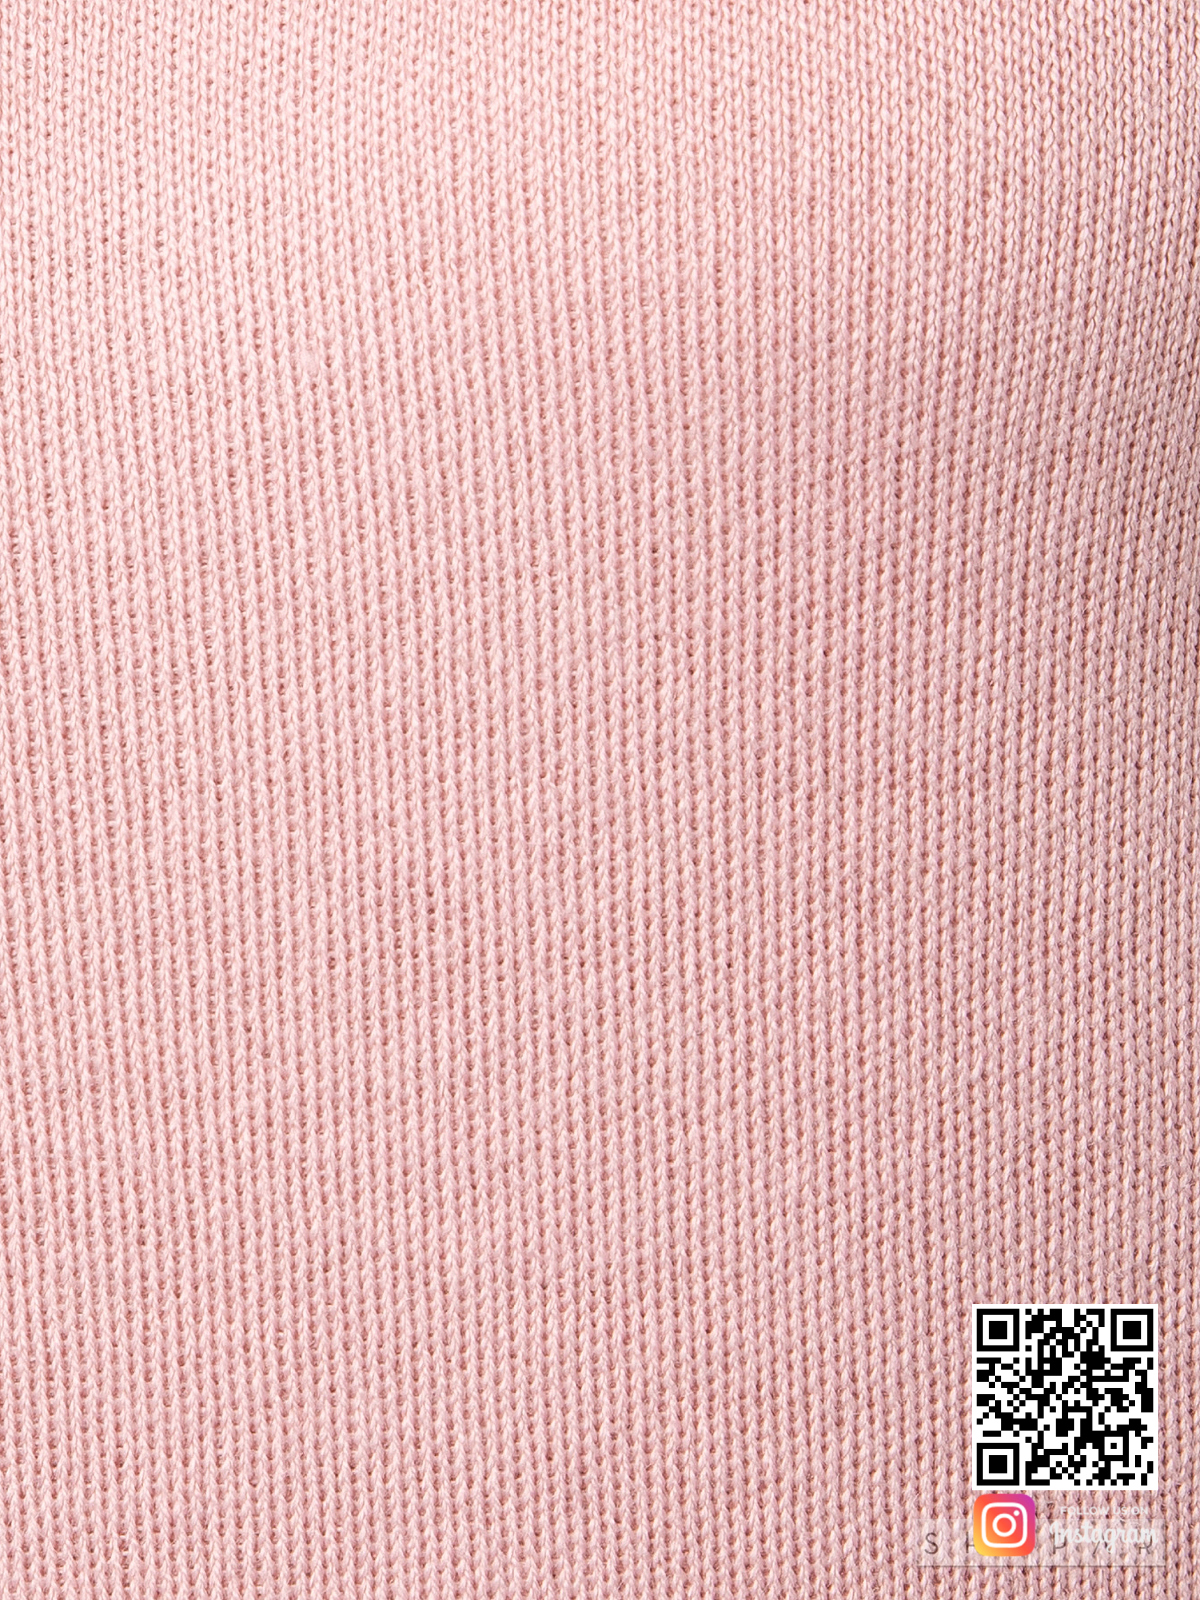 На шестой фотографии розовый спортивный костюм женский крупным планом от Shapar, бренда вязаной одежды ручной работы в интернет-магазине связанных спицами вещей.